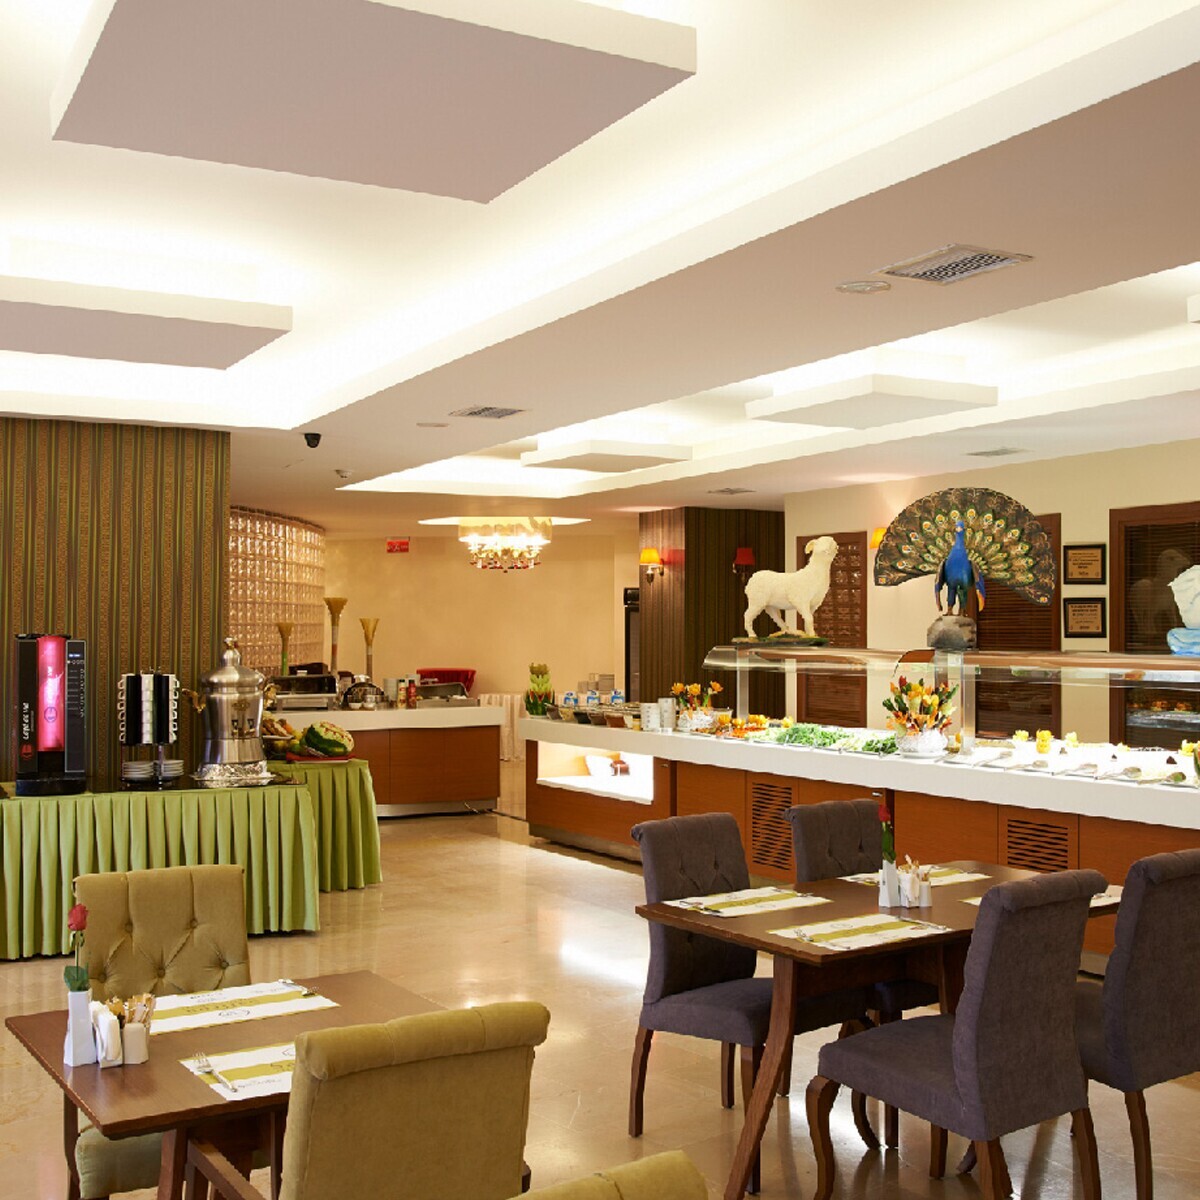 Eskişehir Reyna Premium Hotel'den Ev Konforunda Bir Konaklama Yapmak İsteyenler İçin 1 veya 2 Kişilik Konaklama Paketler